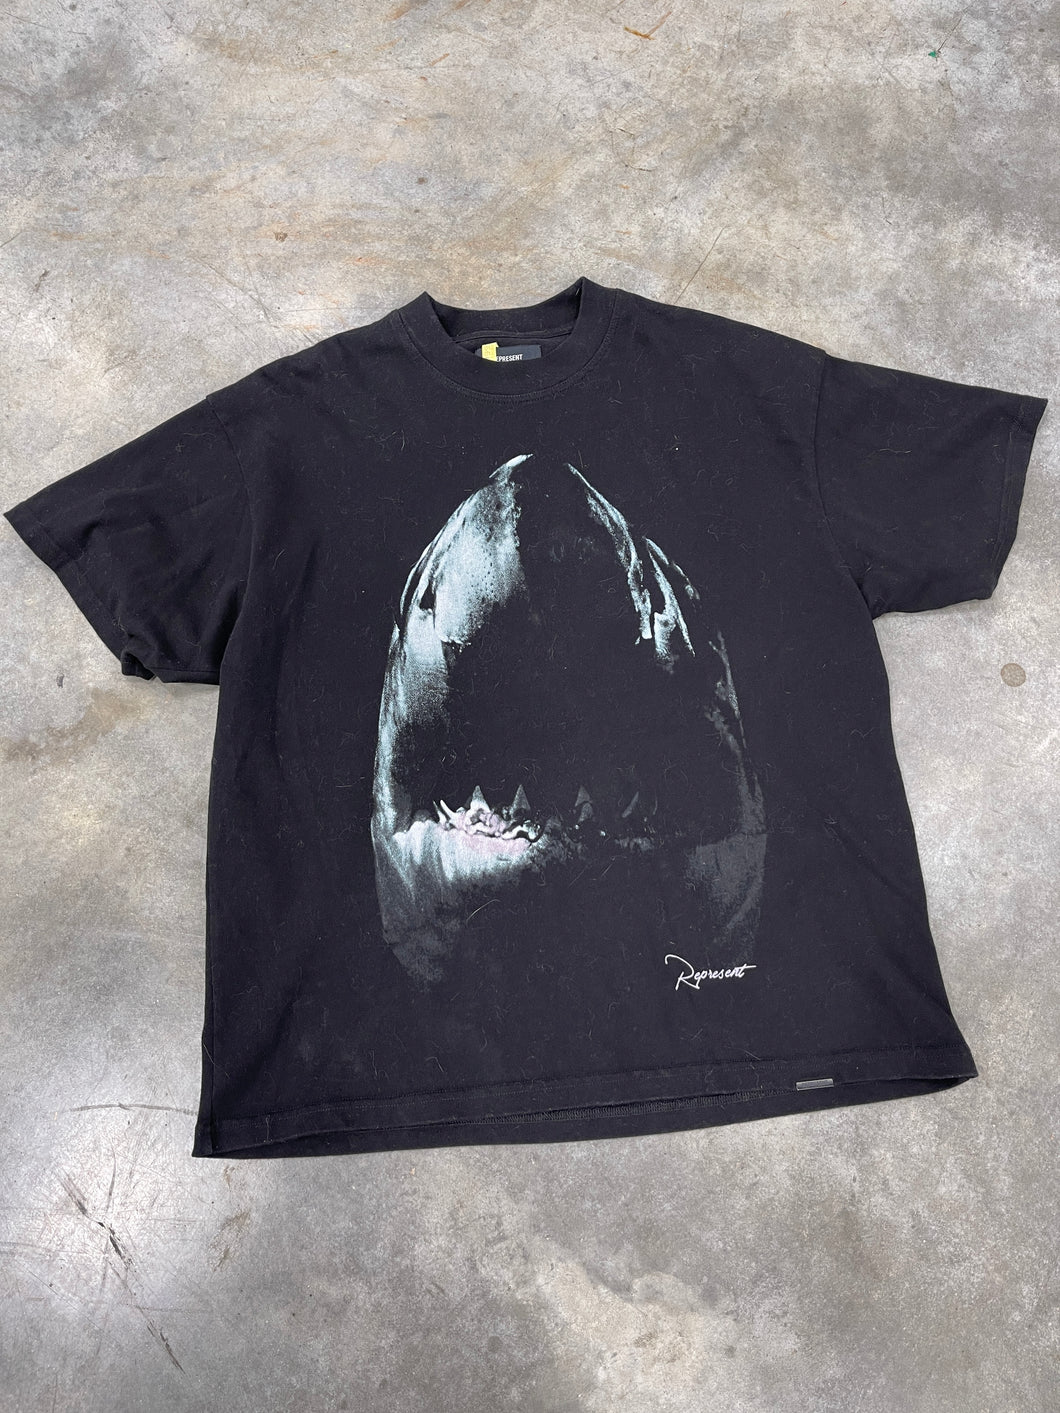 Represent Shark Shirt Sz L